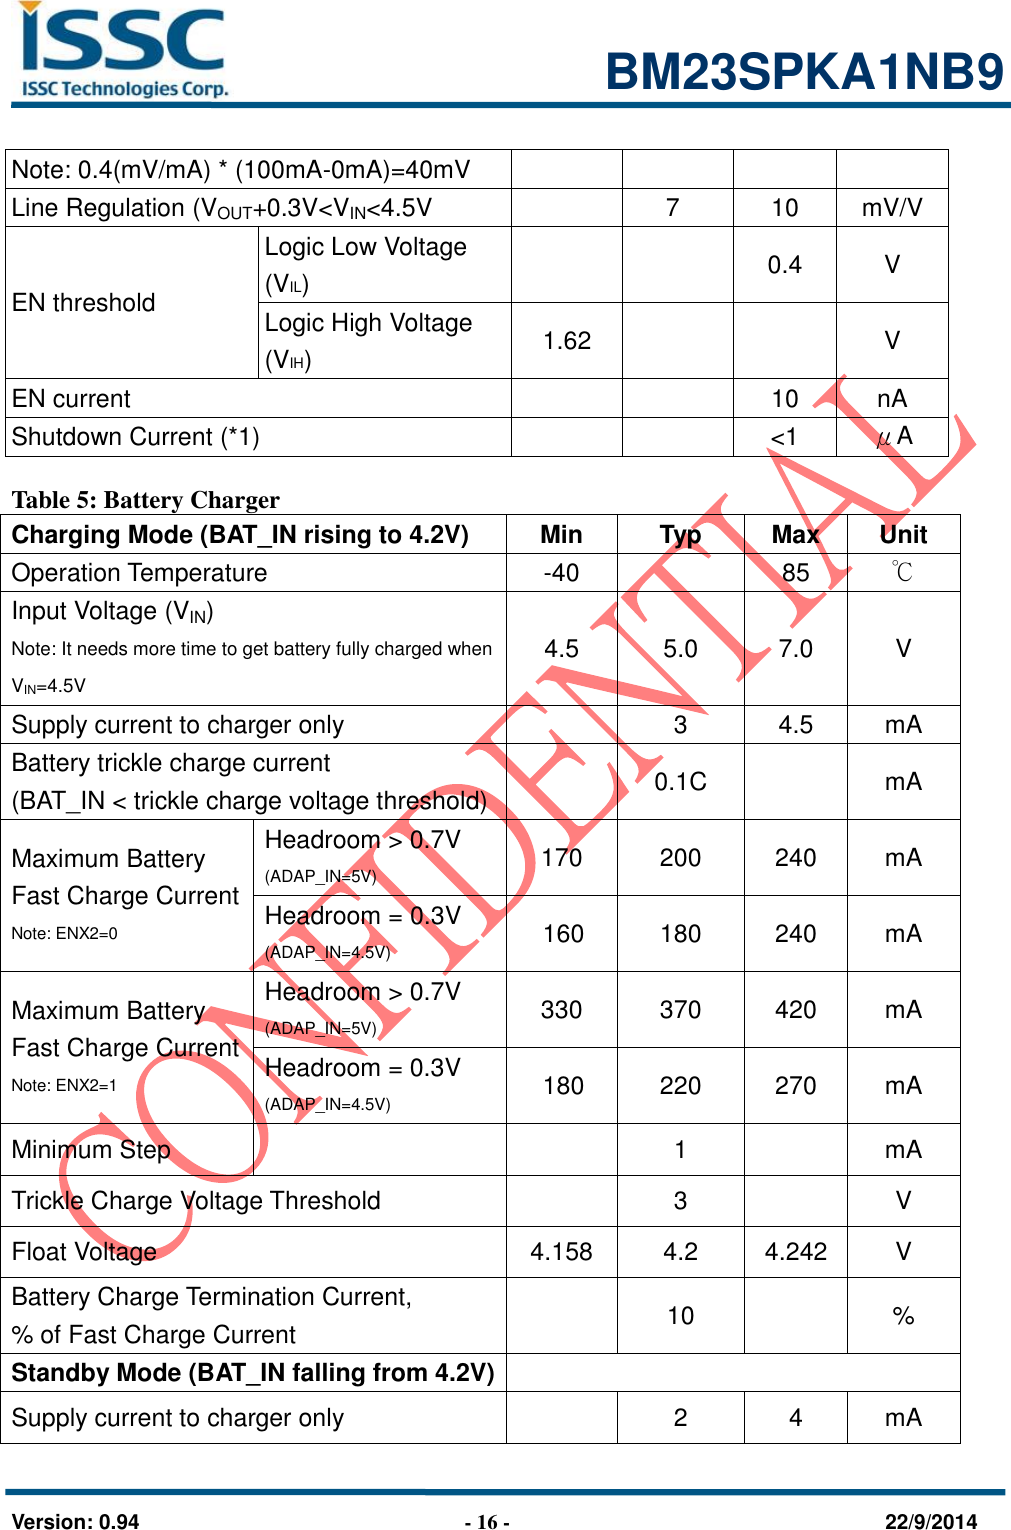                                                            BM23SPKA1NB9   Version: 0.94                              - 16 -                                    22/9/2014 Note: 0.4(mV/mA) * (100mA-0mA)=40mV Line Regulation (VOUT+0.3V&lt;VIN&lt;4.5V  7 10 mV/V EN threshold Logic Low Voltage (VIL)   0.4 V Logic High Voltage (VIH) 1.62   V EN current   10 nA Shutdown Current (*1)   &lt;1 μA  Table 5: Battery Charger Charging Mode (BAT_IN rising to 4.2V) Min Typ Max Unit Operation Temperature -40  85 ℃ Input Voltage (VIN) Note: It needs more time to get battery fully charged when VIN=4.5V 4.5 5.0 7.0 V Supply current to charger only  3 4.5 mA Battery trickle charge current (BAT_IN &lt; trickle charge voltage threshold)  0.1C  mA Maximum Battery   Fast Charge Current   Note: ENX2=0 Headroom &gt; 0.7V   (ADAP_IN=5V) 170 200 240 mA Headroom = 0.3V (ADAP_IN=4.5V) 160 180 240 mA Maximum Battery   Fast Charge Current   Note: ENX2=1 Headroom &gt; 0.7V (ADAP_IN=5V) 330 370 420 mA Headroom = 0.3V (ADAP_IN=4.5V) 180 220 270 mA Minimum Step     1  mA Trickle Charge Voltage Threshold  3  V Float Voltage   4.158 4.2 4.242 V Battery Charge Termination Current,   % of Fast Charge Current  10  % Standby Mode (BAT_IN falling from 4.2V)  Supply current to charger only  2 4 mA 